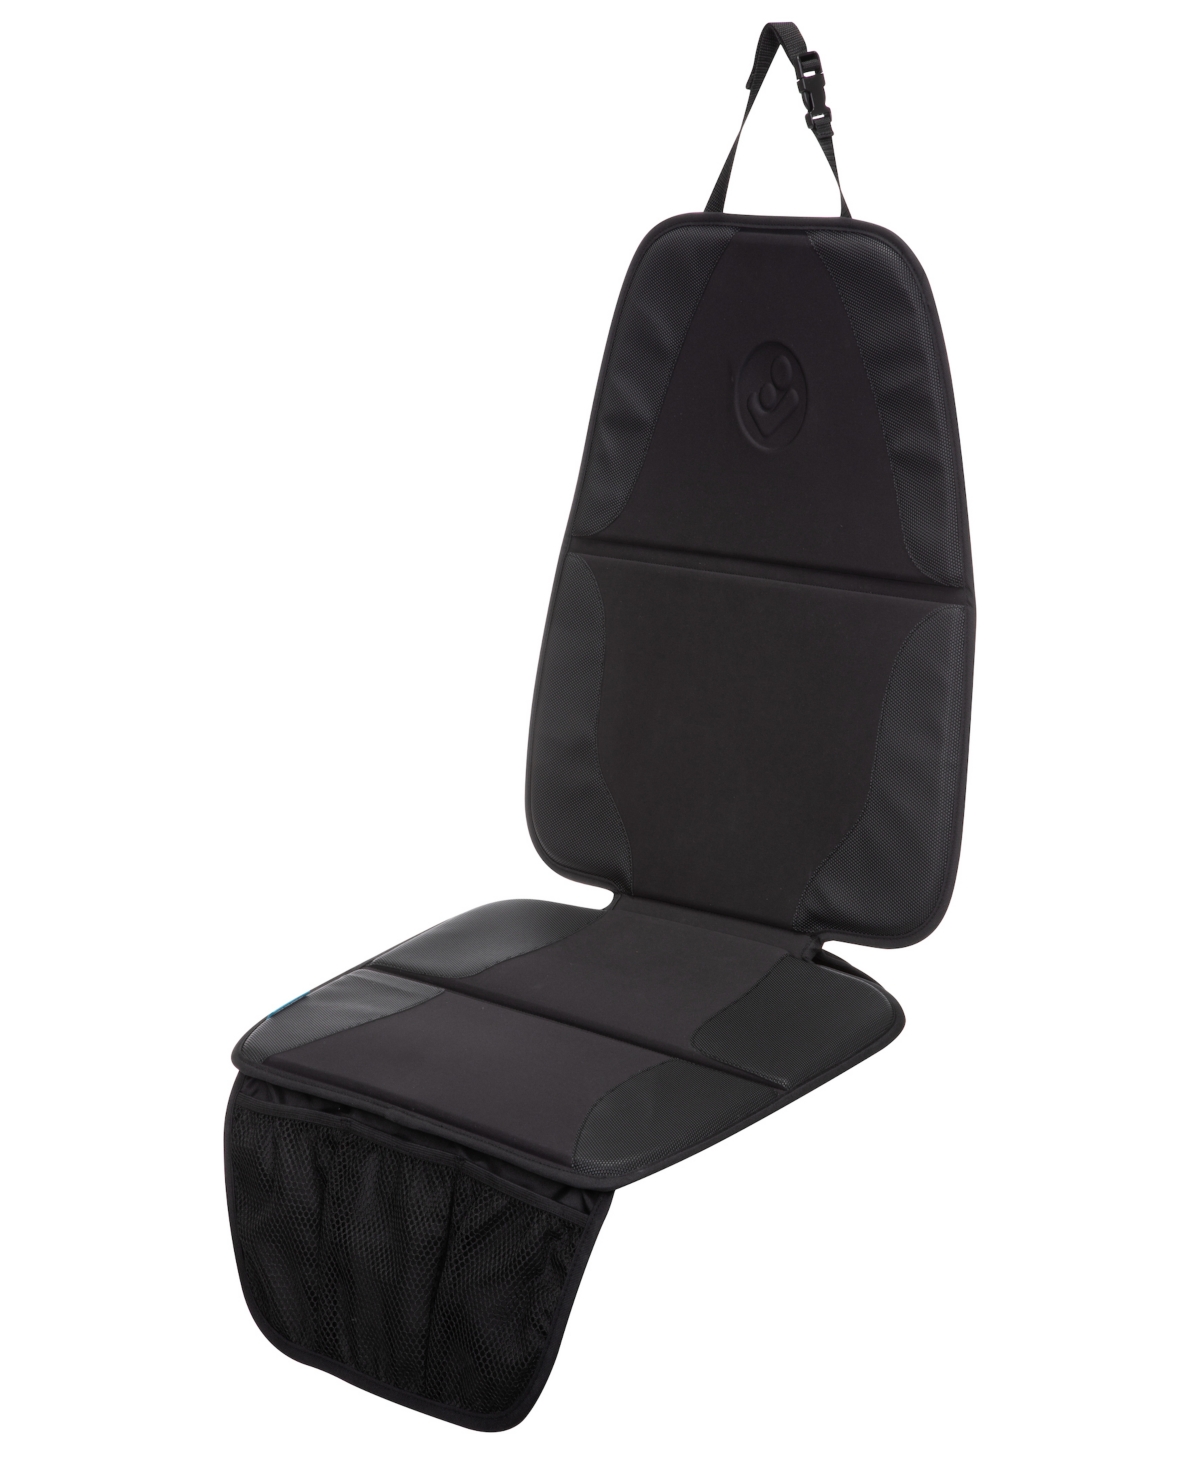 Maxi-cosi Vehicle Seat Protector In Black